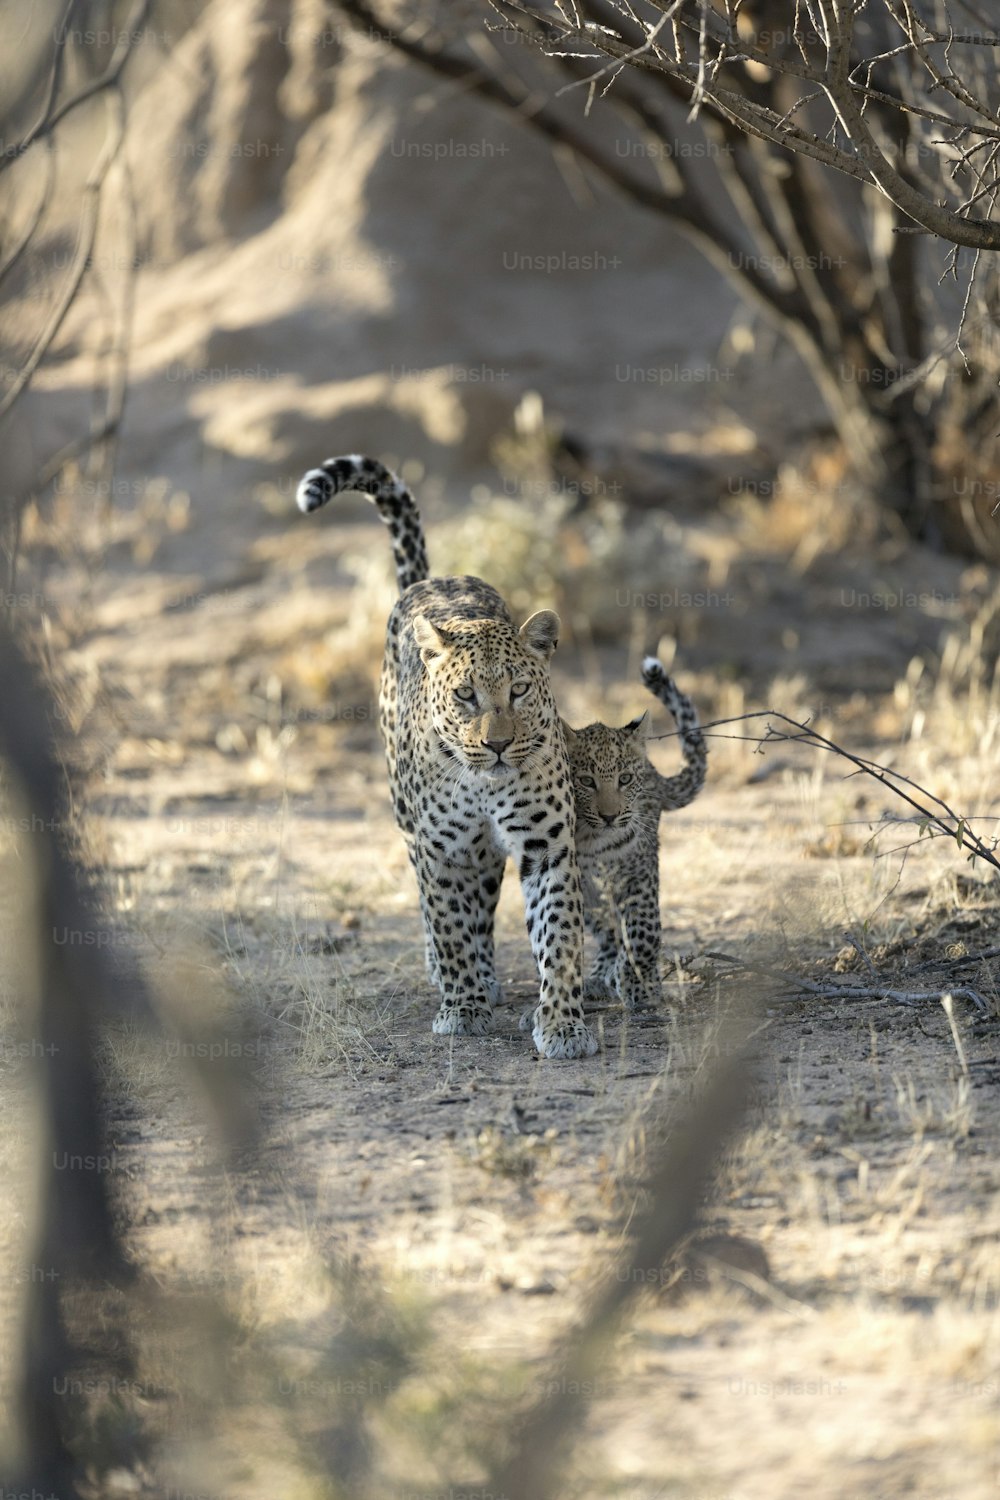 Mãe e seu filhote de leopardo caminhando no Parque Nacional de Etosha, Namíbia.